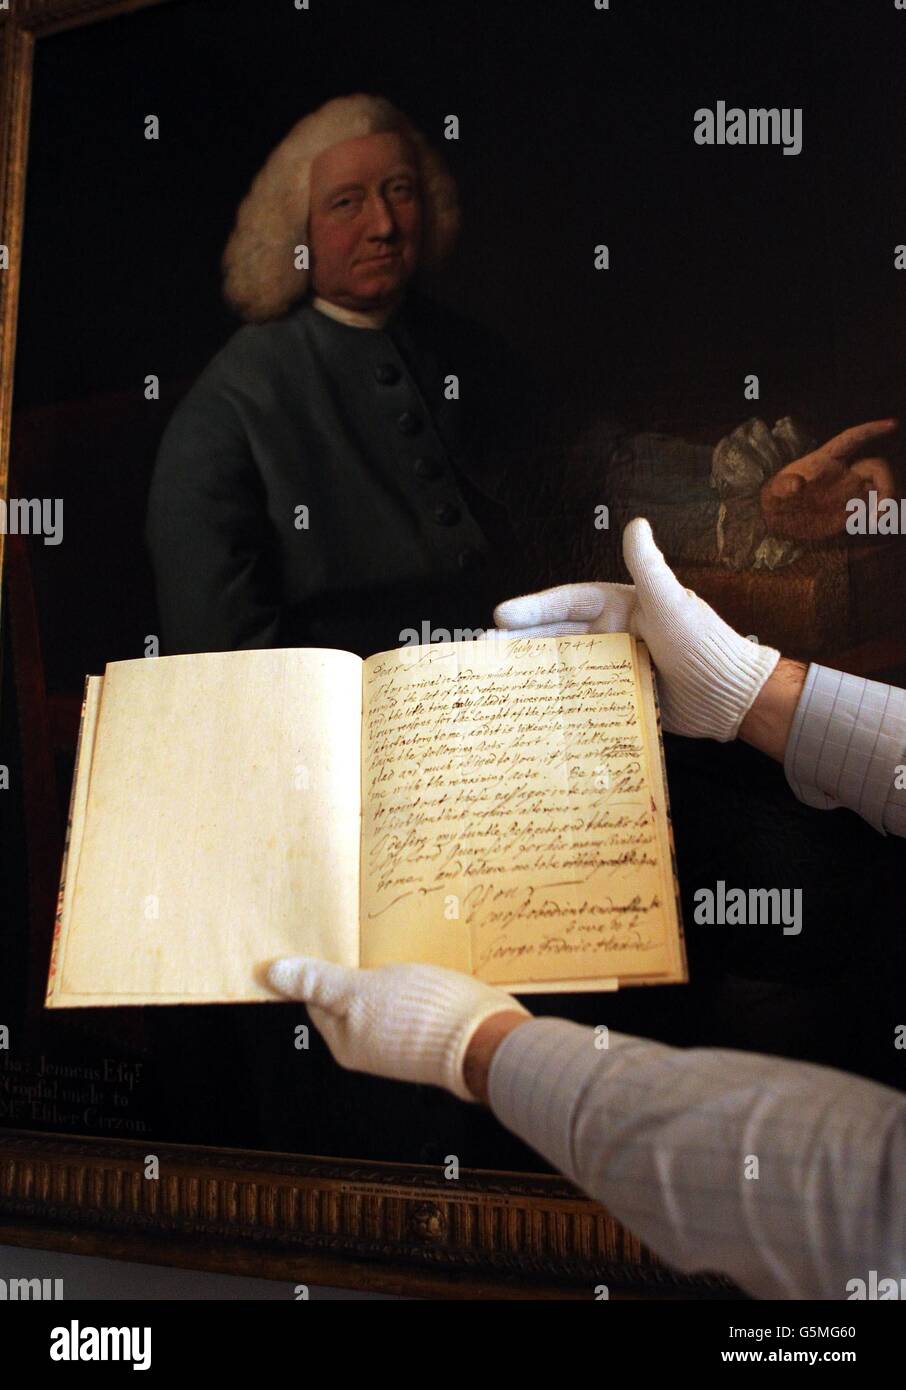 Martin Wyatt, vicedirettore del Museo della Casa di Handel, ha una lettera scritta da Handel a Charles Jennens davanti ad un ritratto di Charles Jennens, ad una fotocellula per l'uomo dietro il Messia, la prima esposizione sul collaboratore segreto di Handel Charles Jennens, presso l'Handel House Museum, Londra. Foto Stock